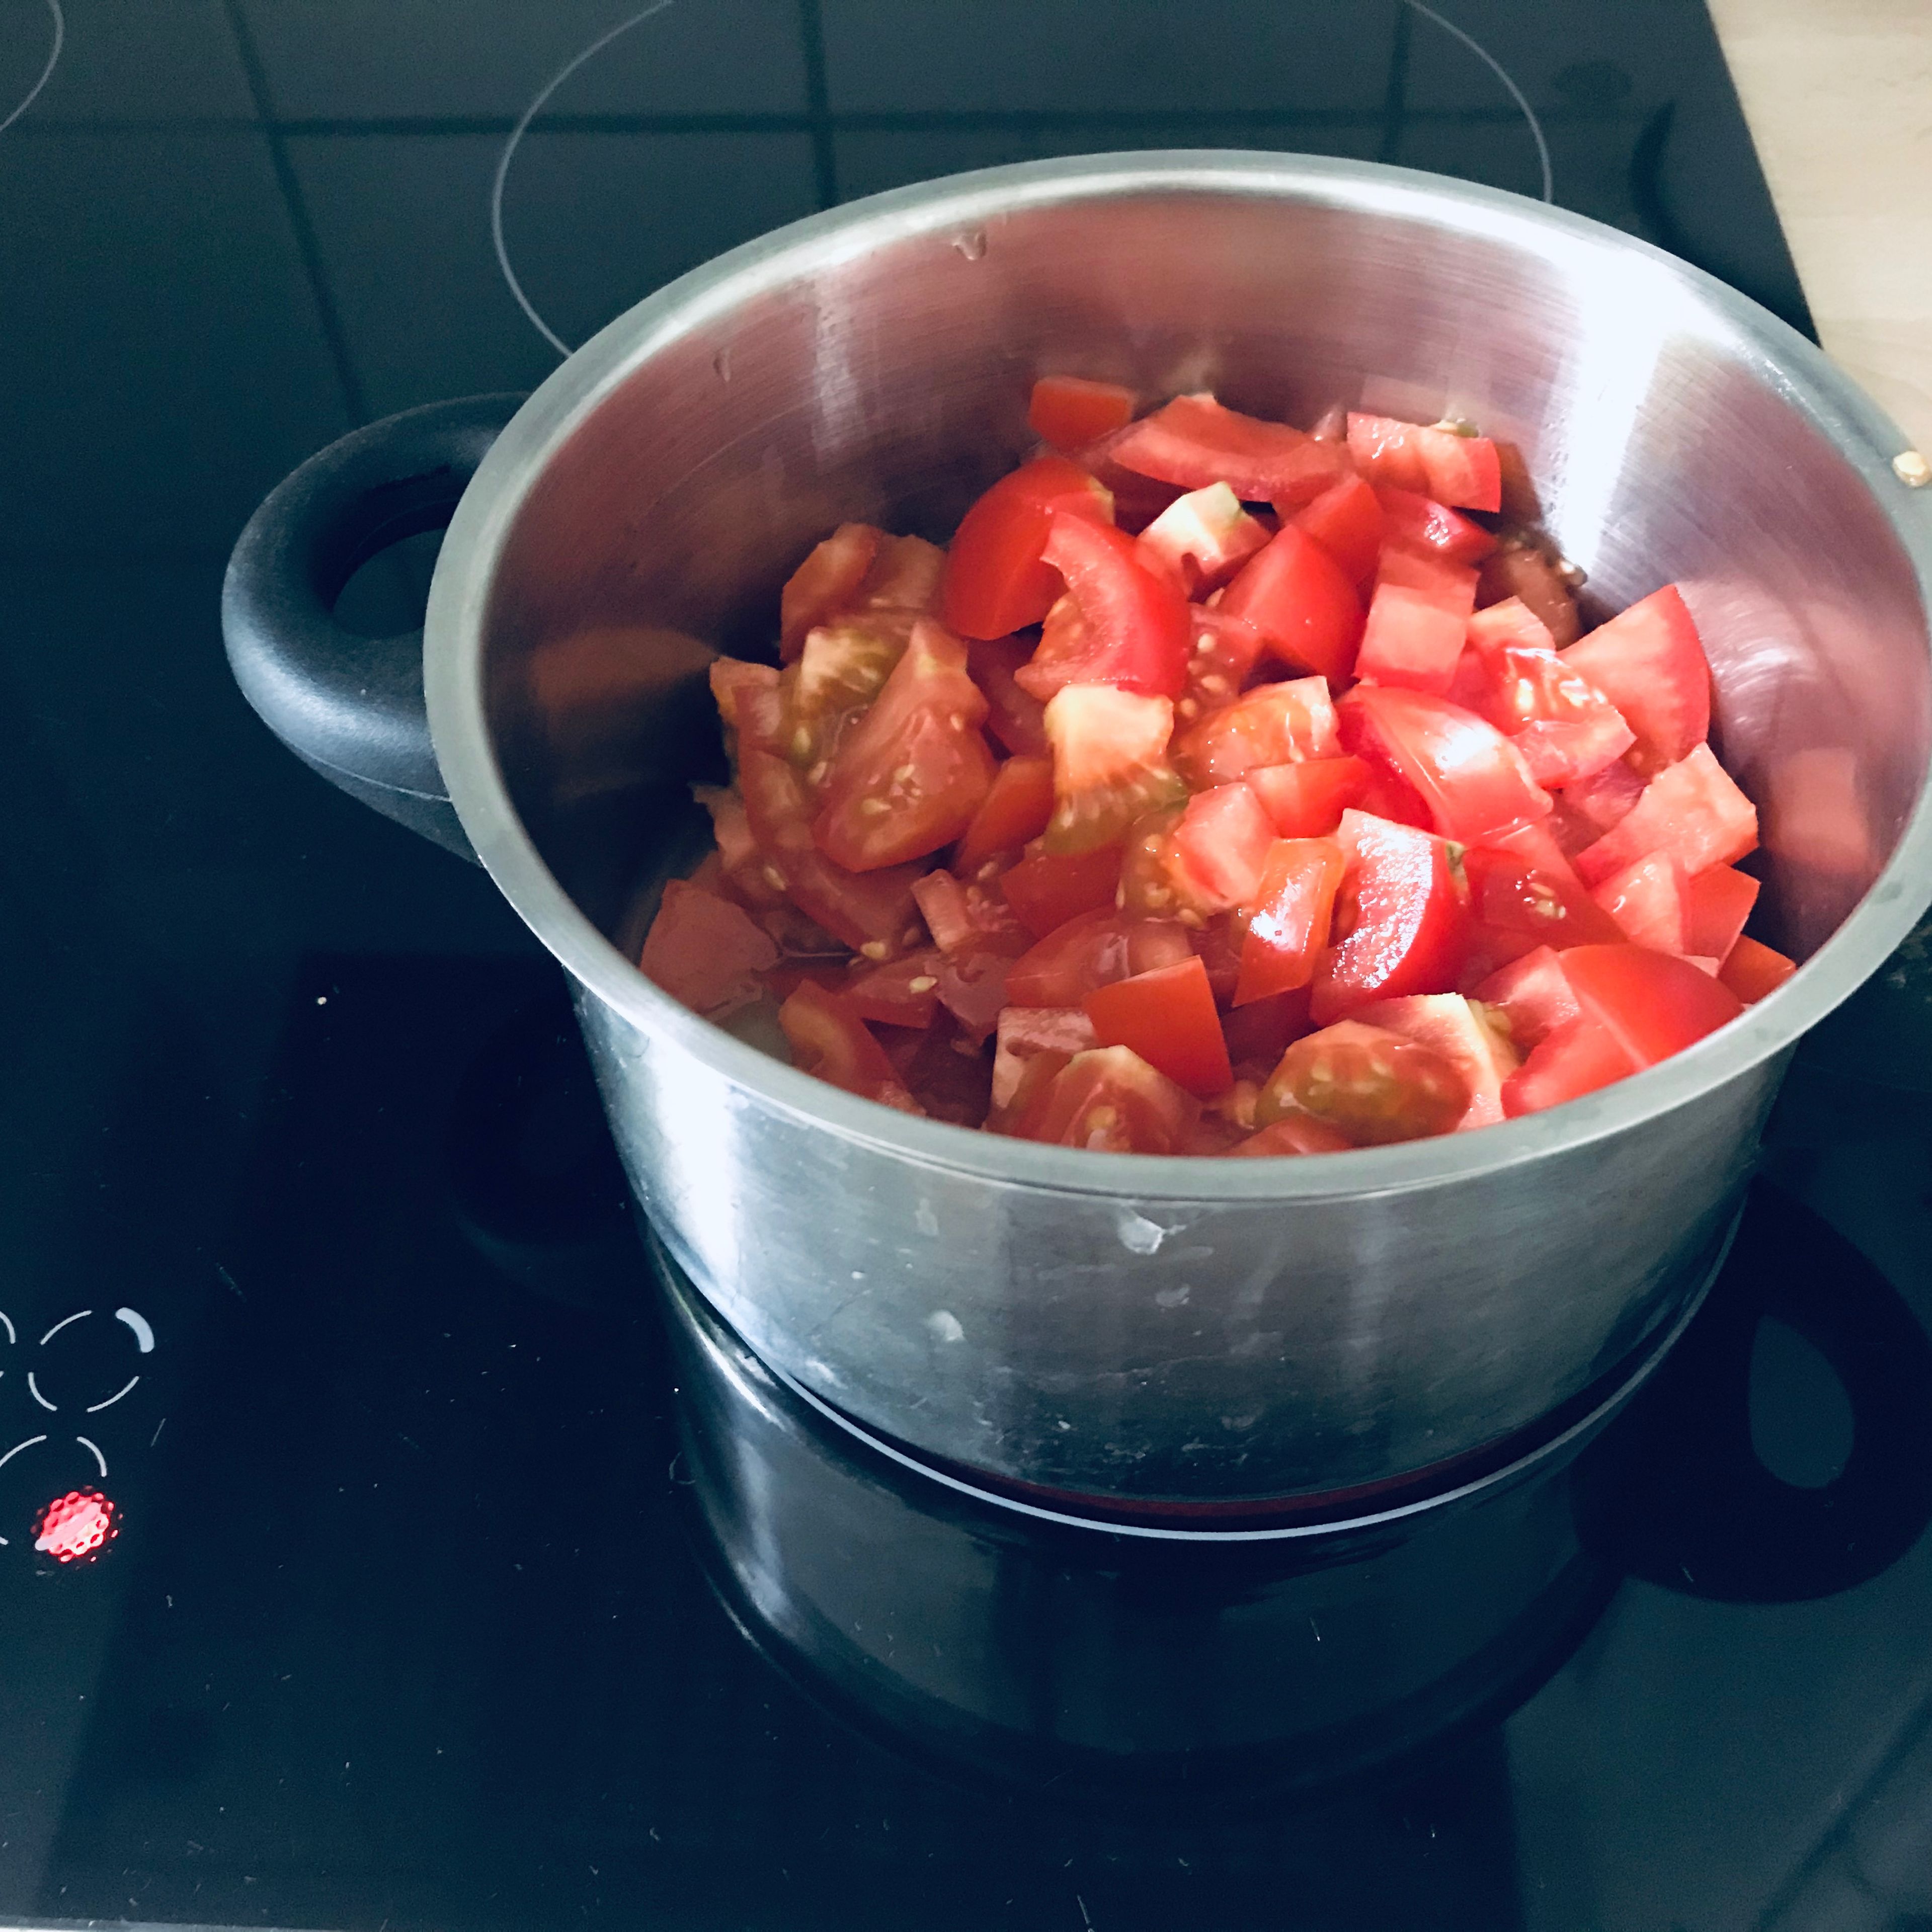 Die Tomaten in einem Topf zum Kochen bringen und für etwa 20min köcheln lassen.